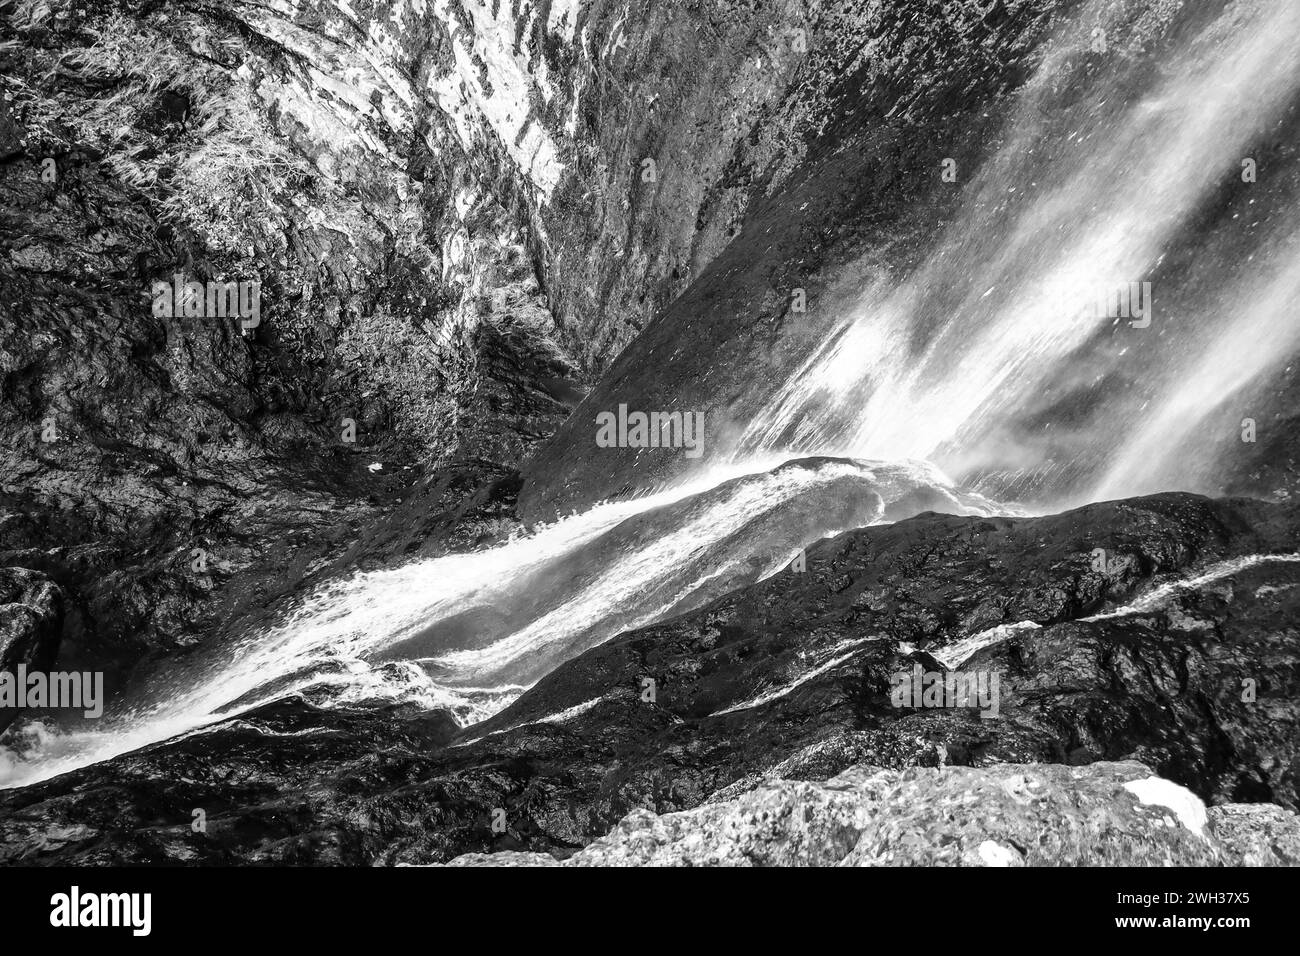 Waterfall in Nacimiento del Rio Mundo in Sierra de Alcaraz, Albacete province, Spain Stock Photo